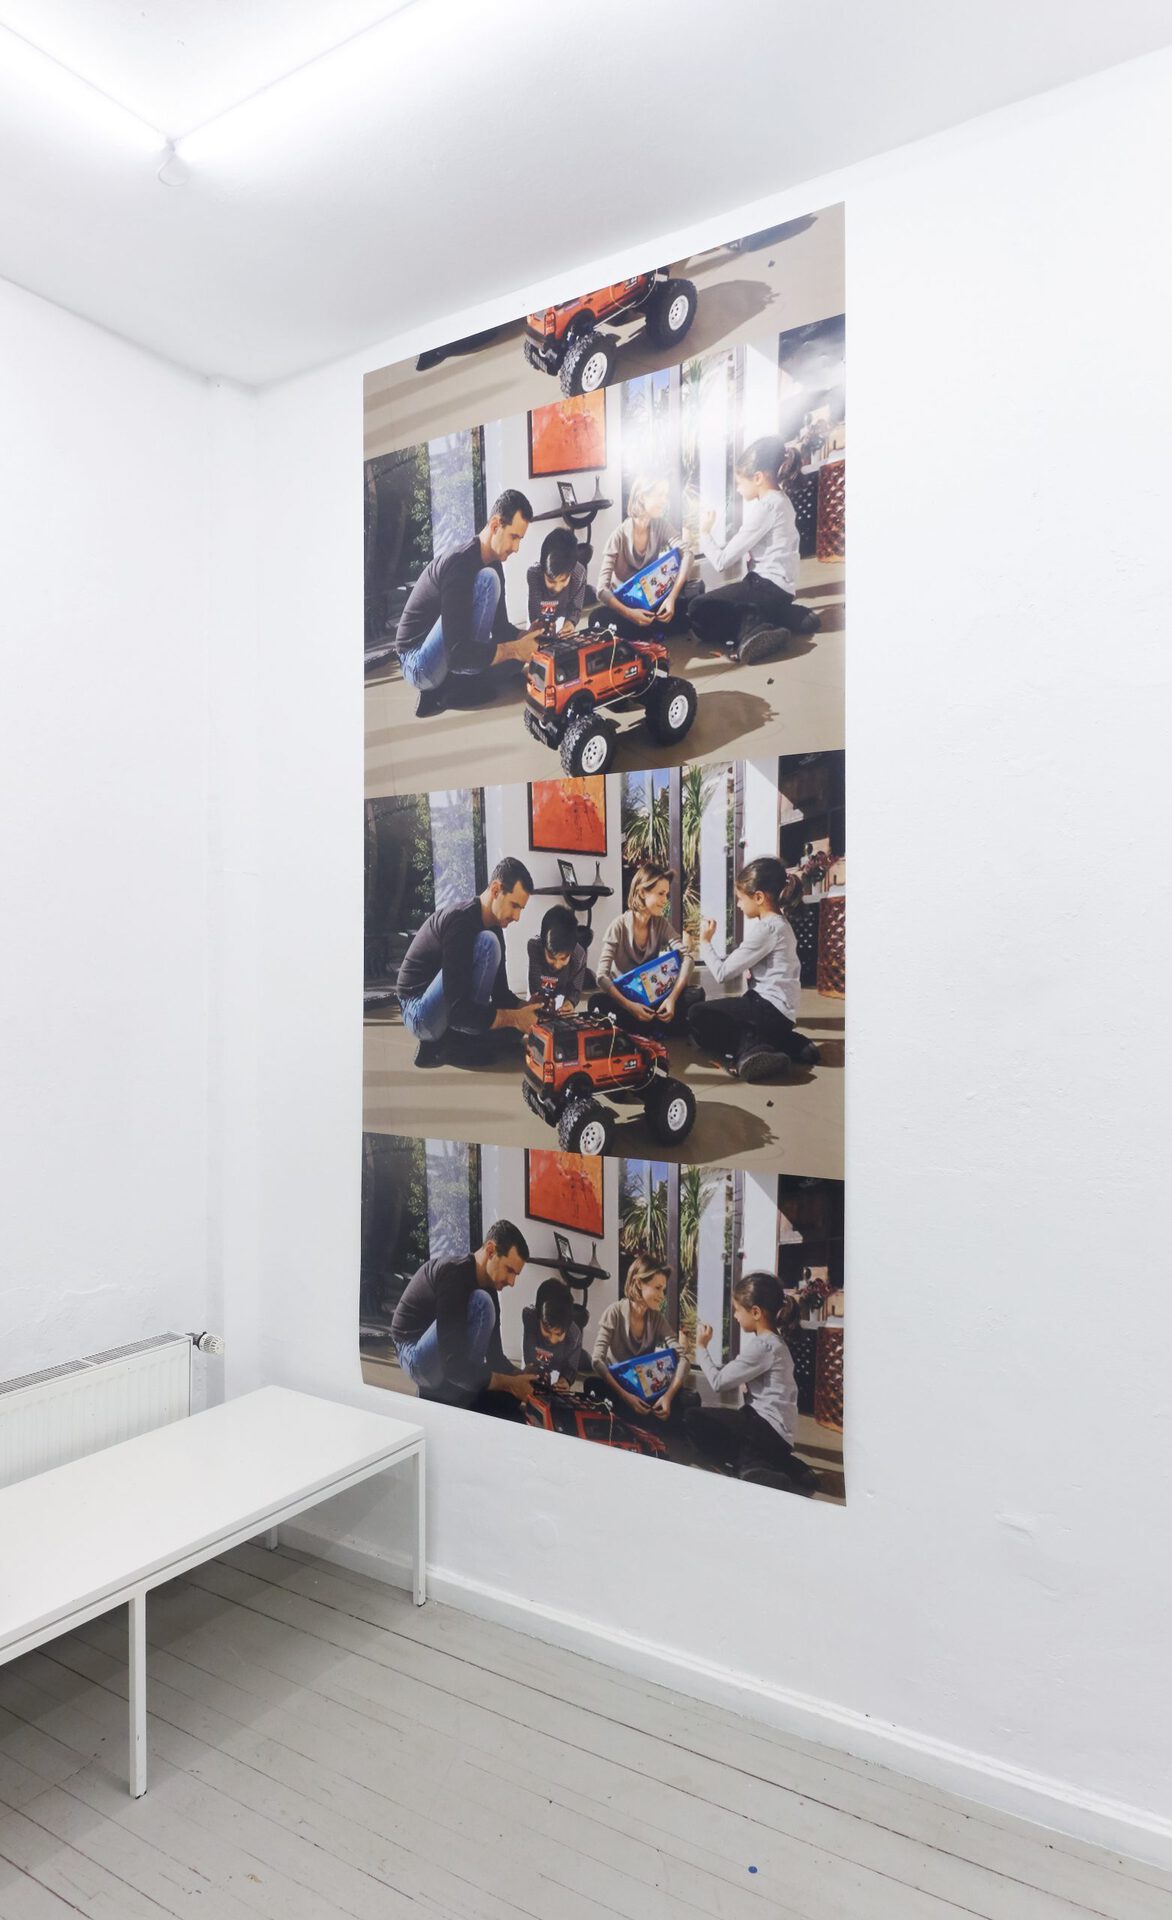 Alex Djidjewdjew, Mobilfunk Rostow am Don, 2019, Wallpaper, 300 x 150 cm